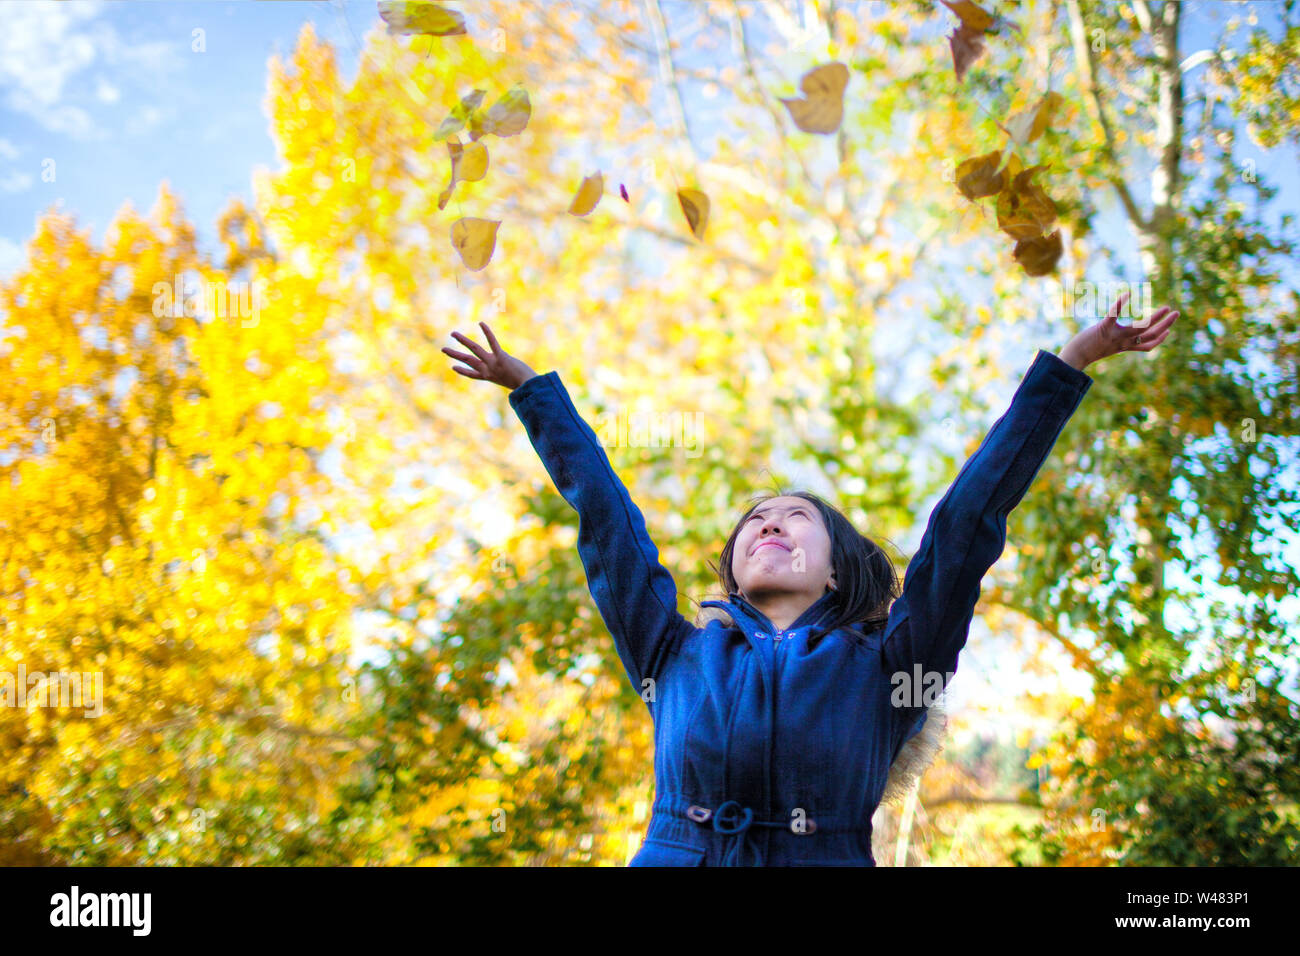 Asiatische Jugendmädchen werfen bis gelbe Blätter im Park mit Bäumen wechselnden Farben im Herbst Saison. Stockfoto